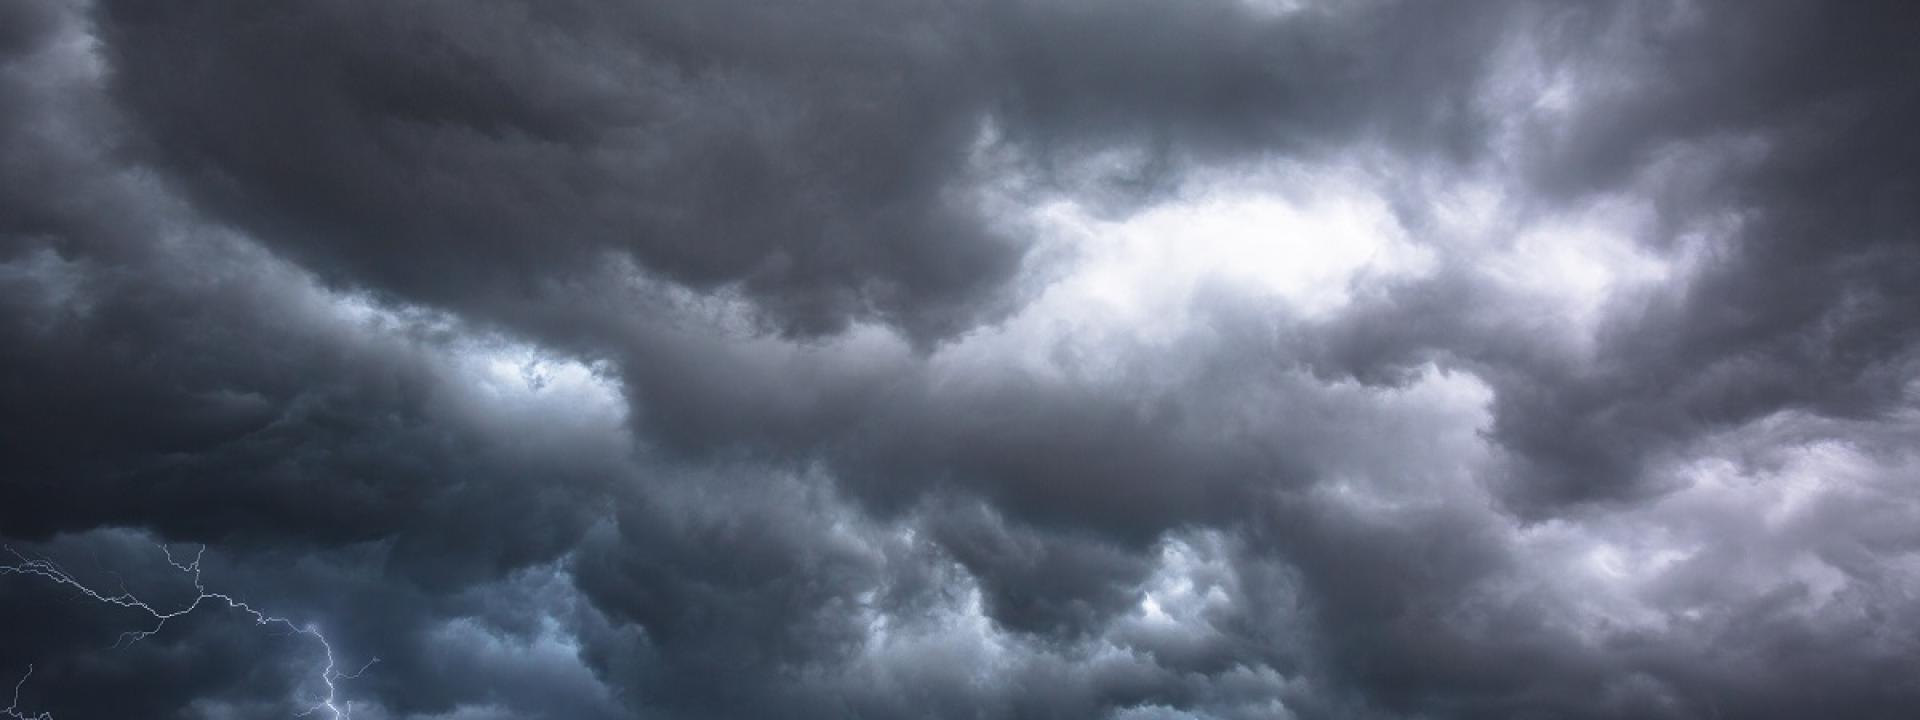 Marche - Allerta meteo: forti temporali nelle aree interne della Regione